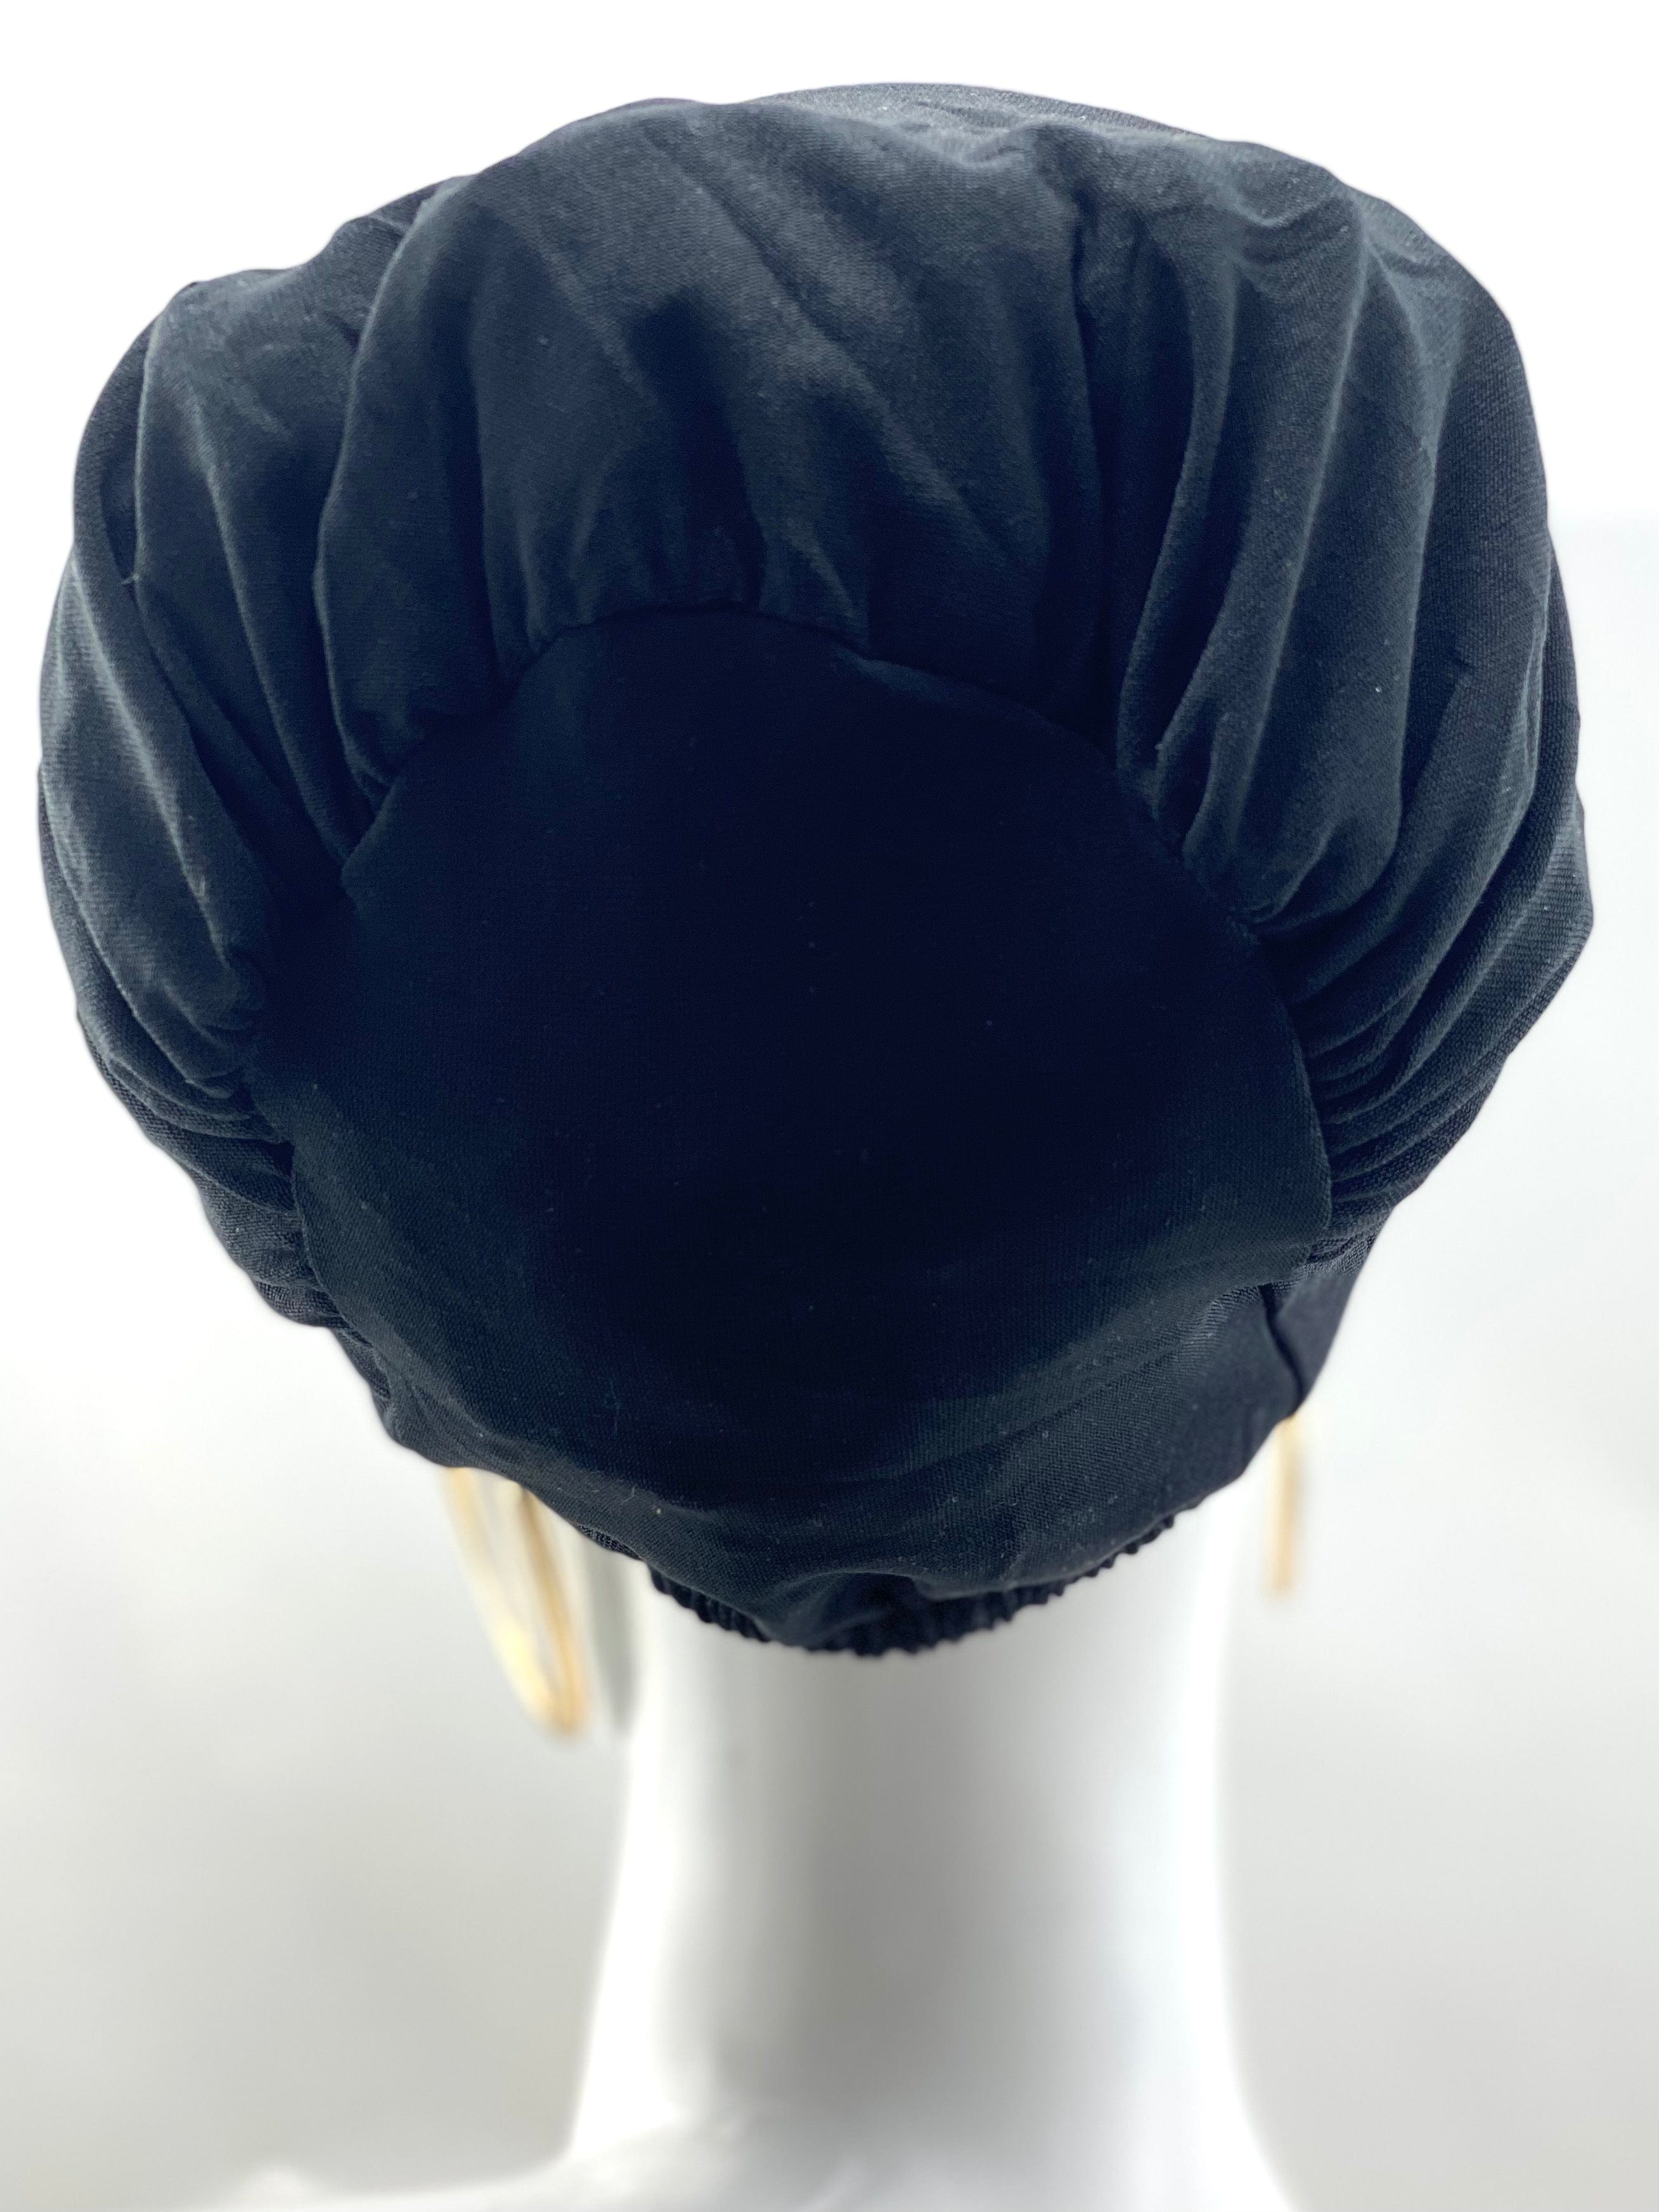 Hijabsandstuff Bonnet Bonnet Black Handmade Luxury Fashion Women Headwrap